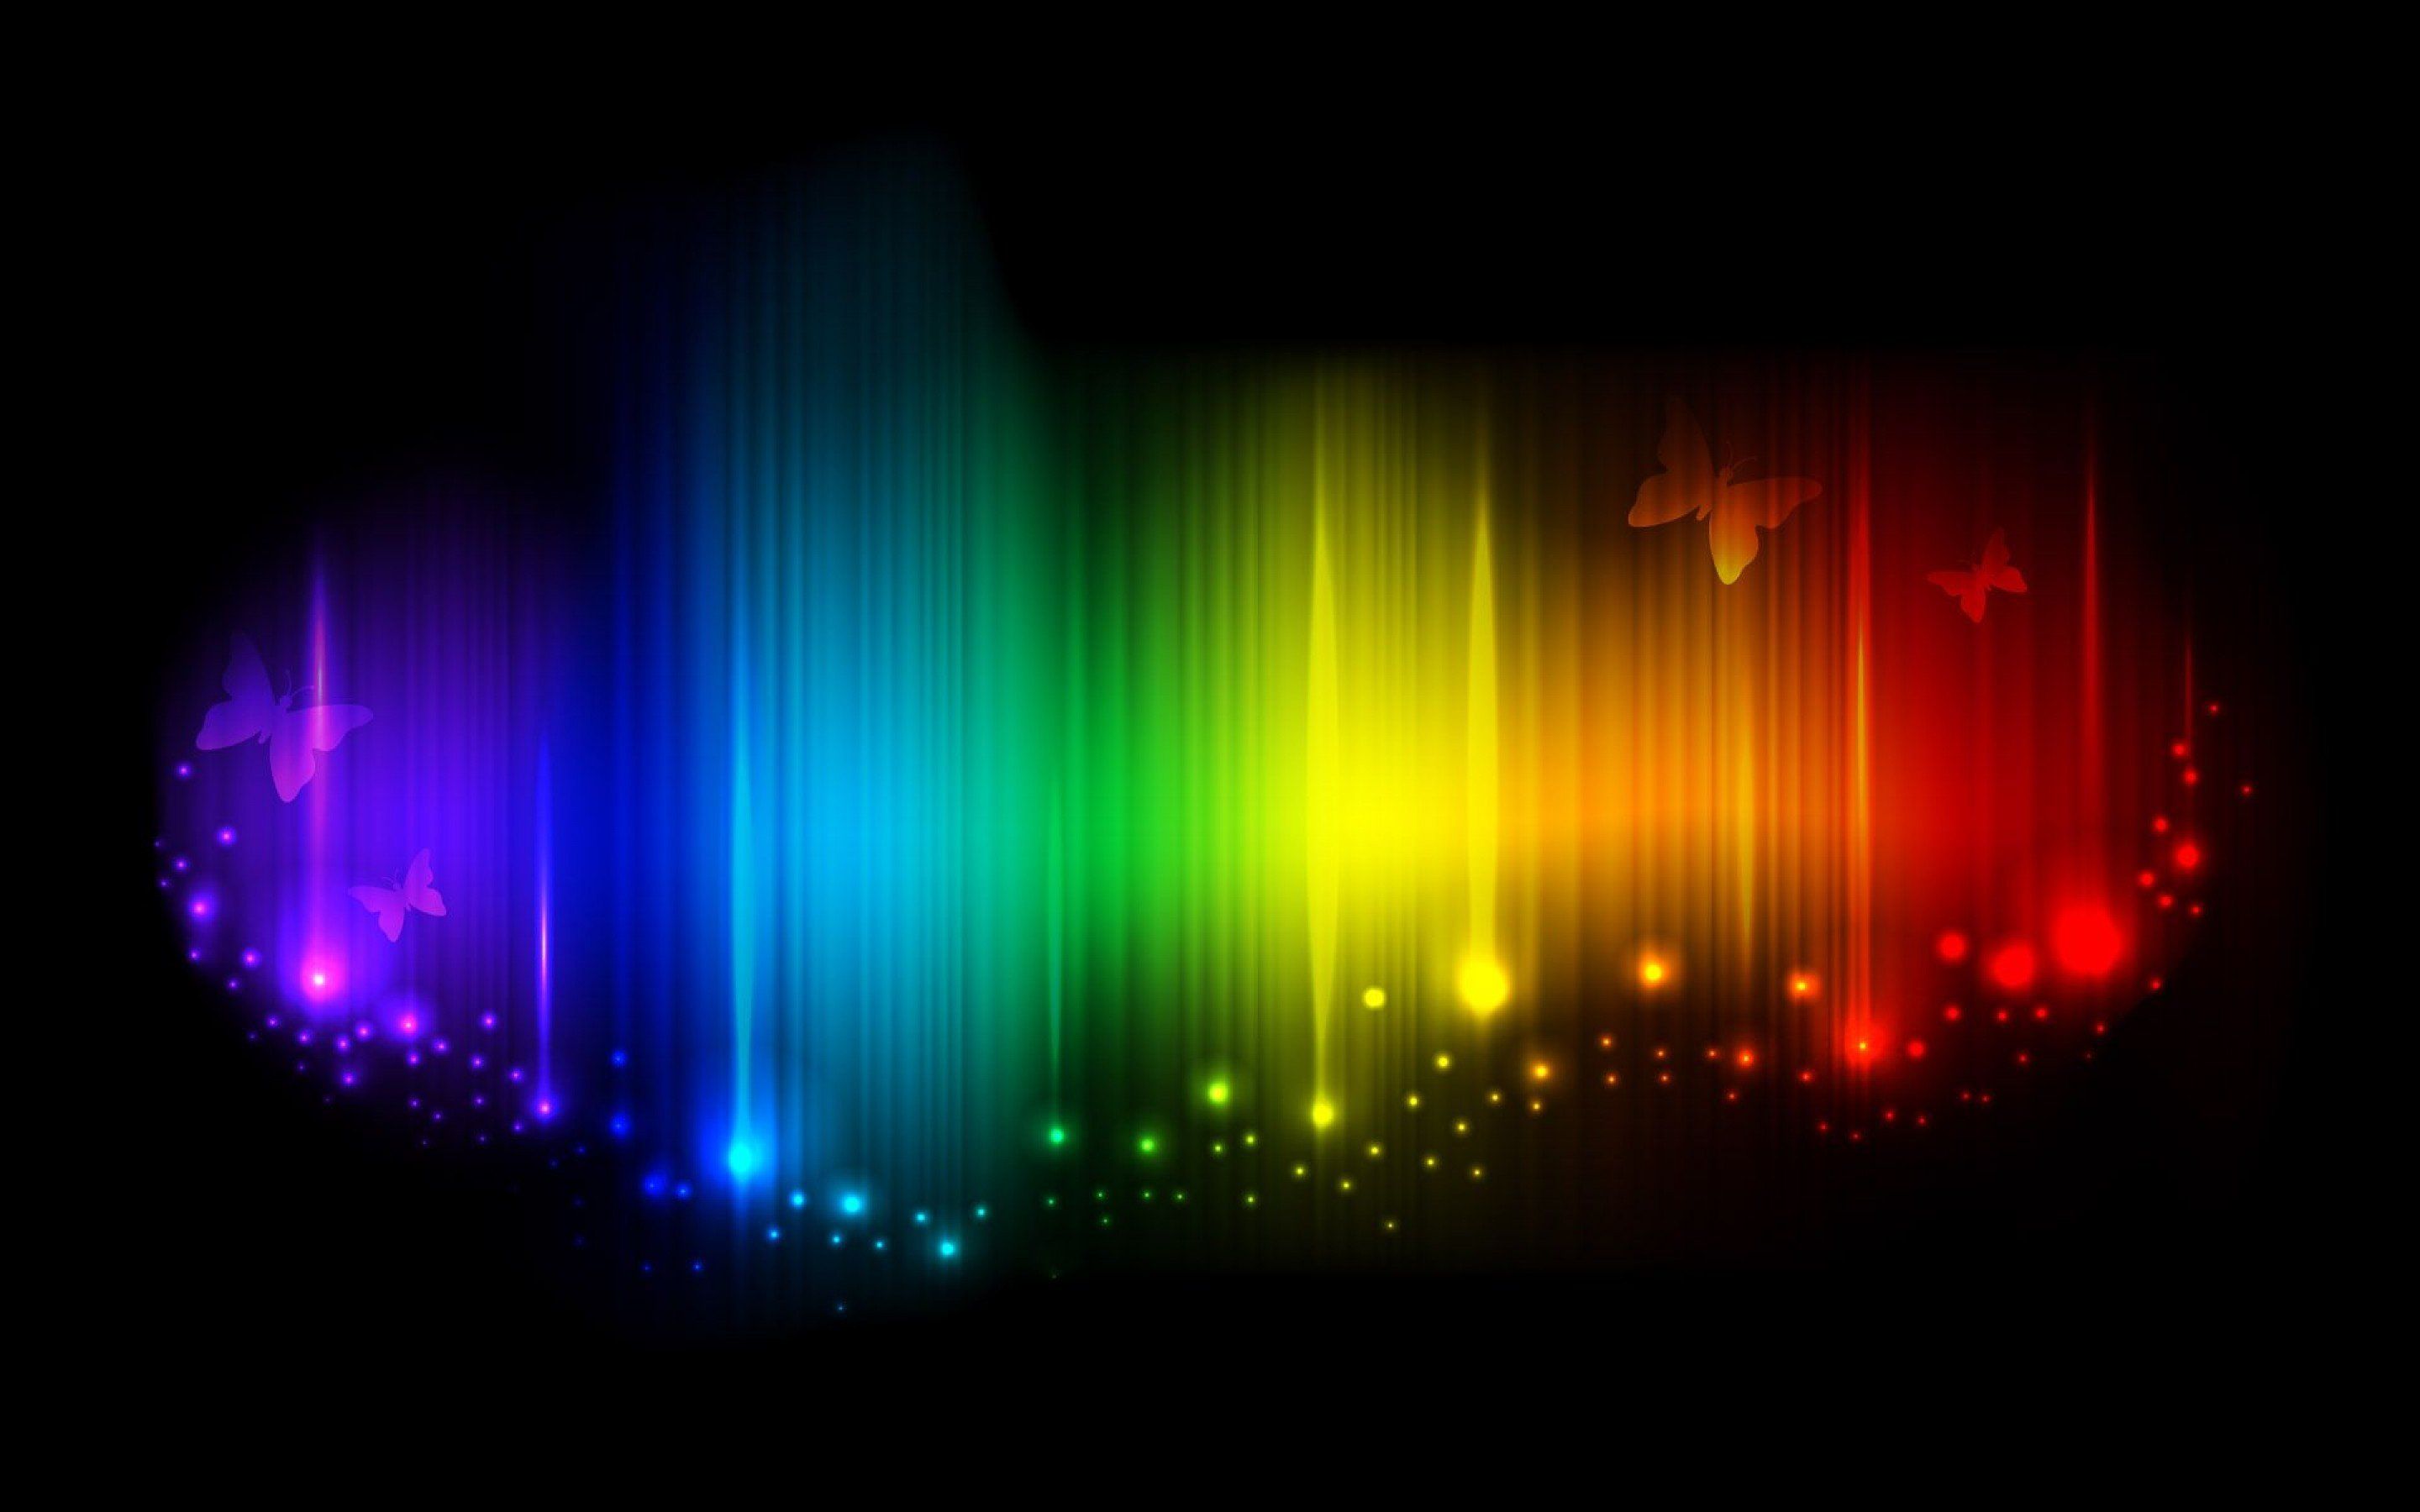 Free Abstract Rainbow Wallpaper Full HD at Abstract Monodomo